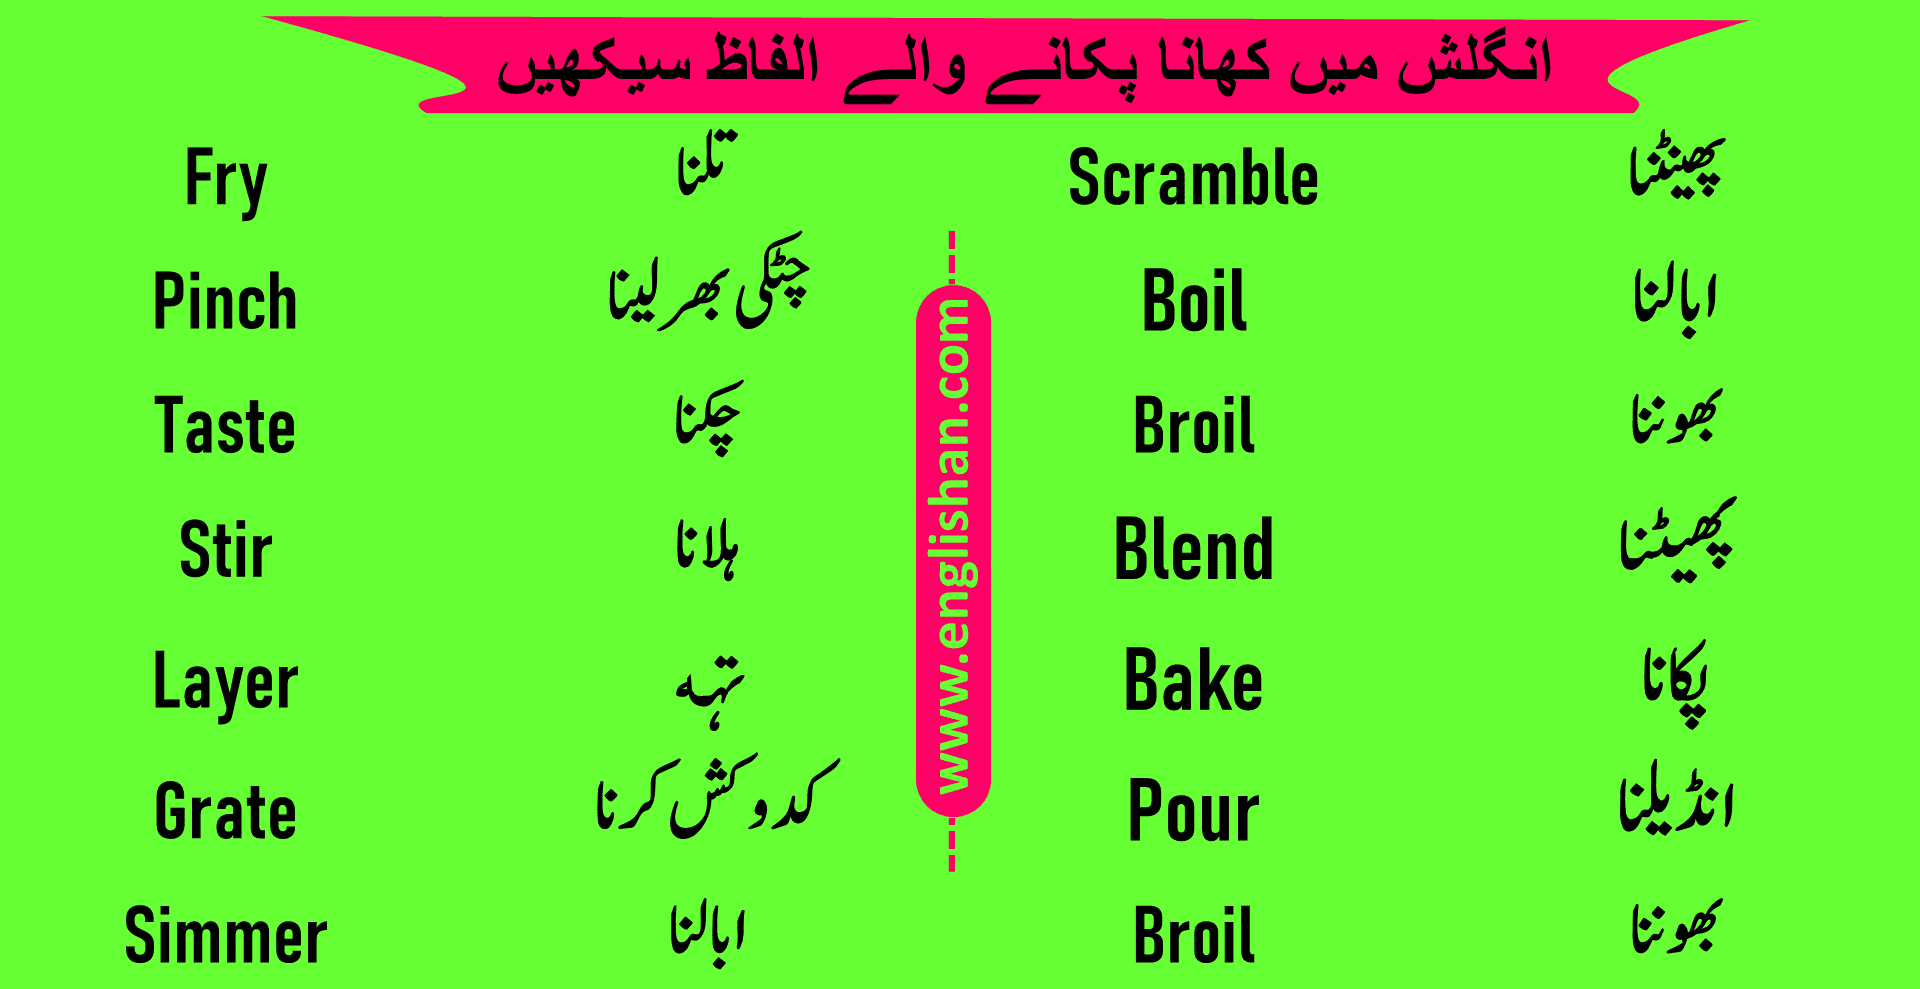 scramble meaning in urdu